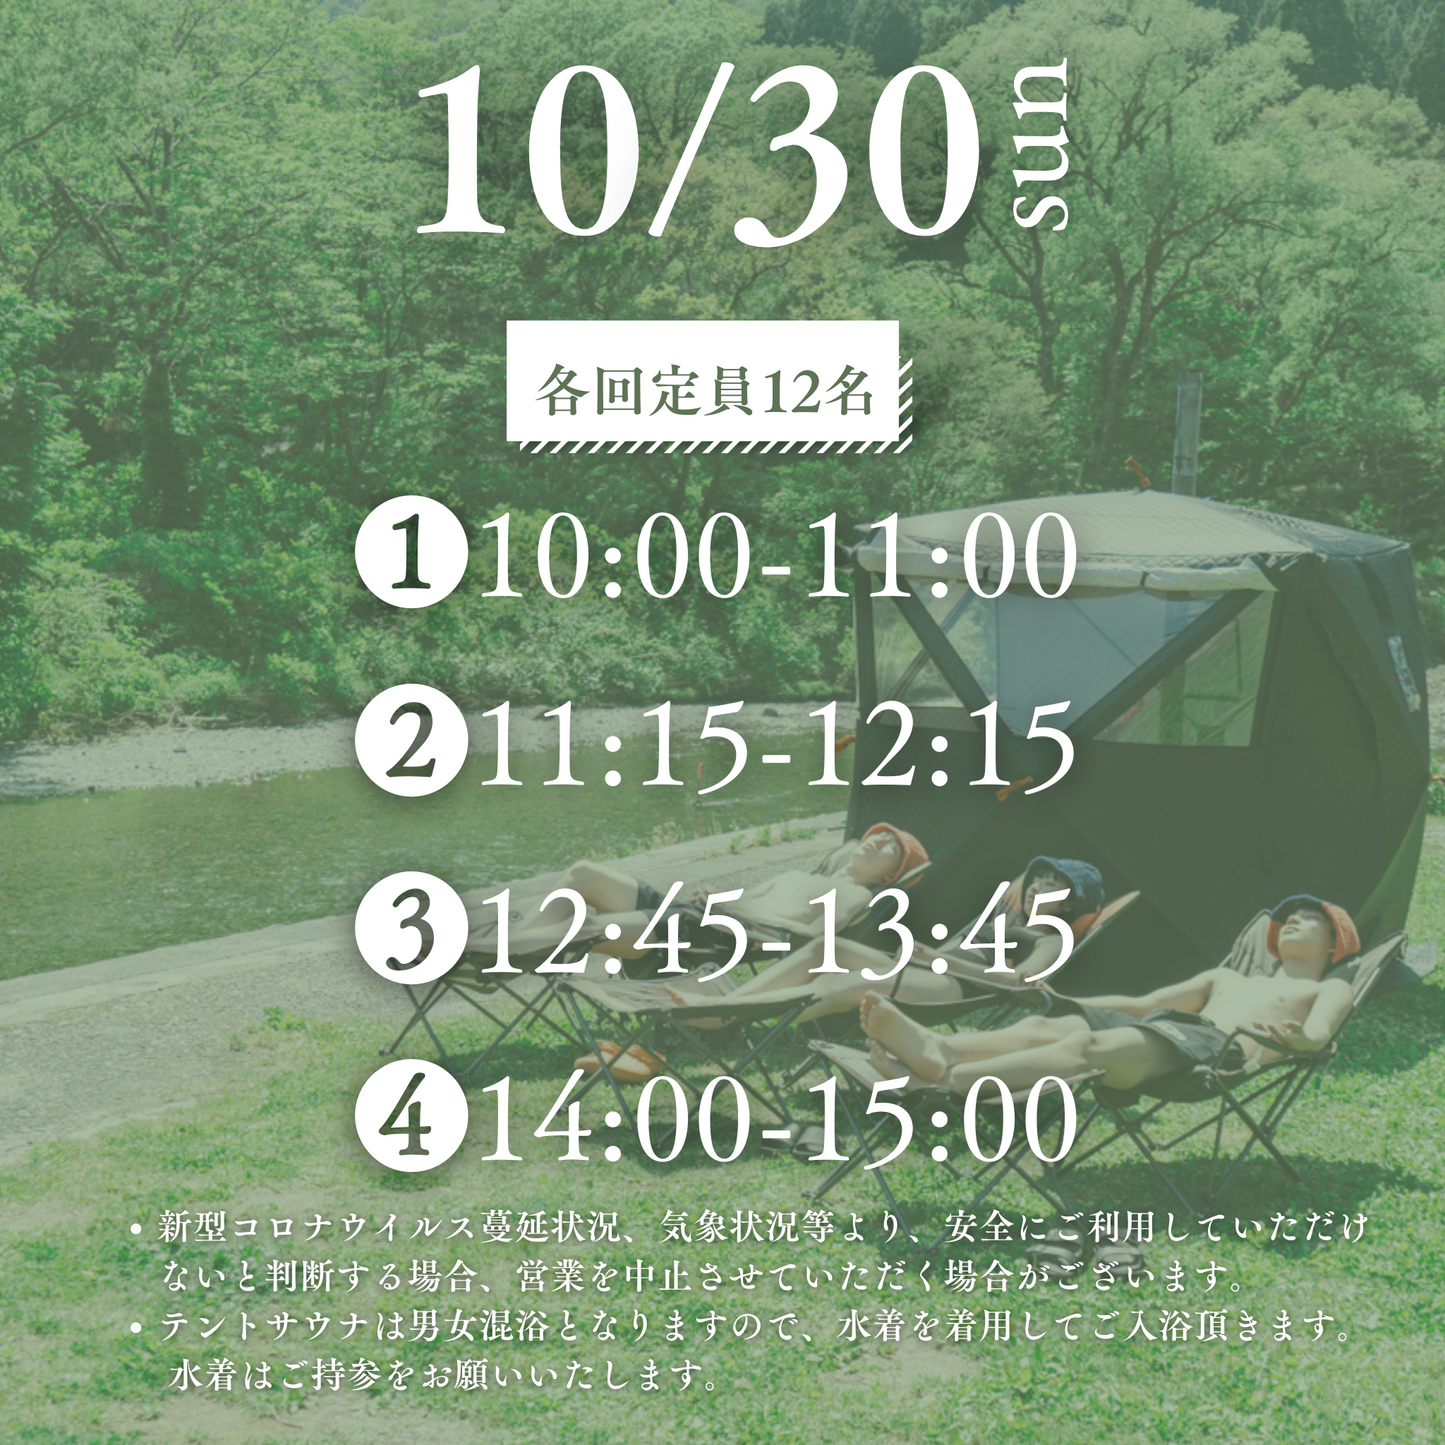 10/30(日) ぎゅっとフェス de ABiL 【テントサウナ体験_予約】